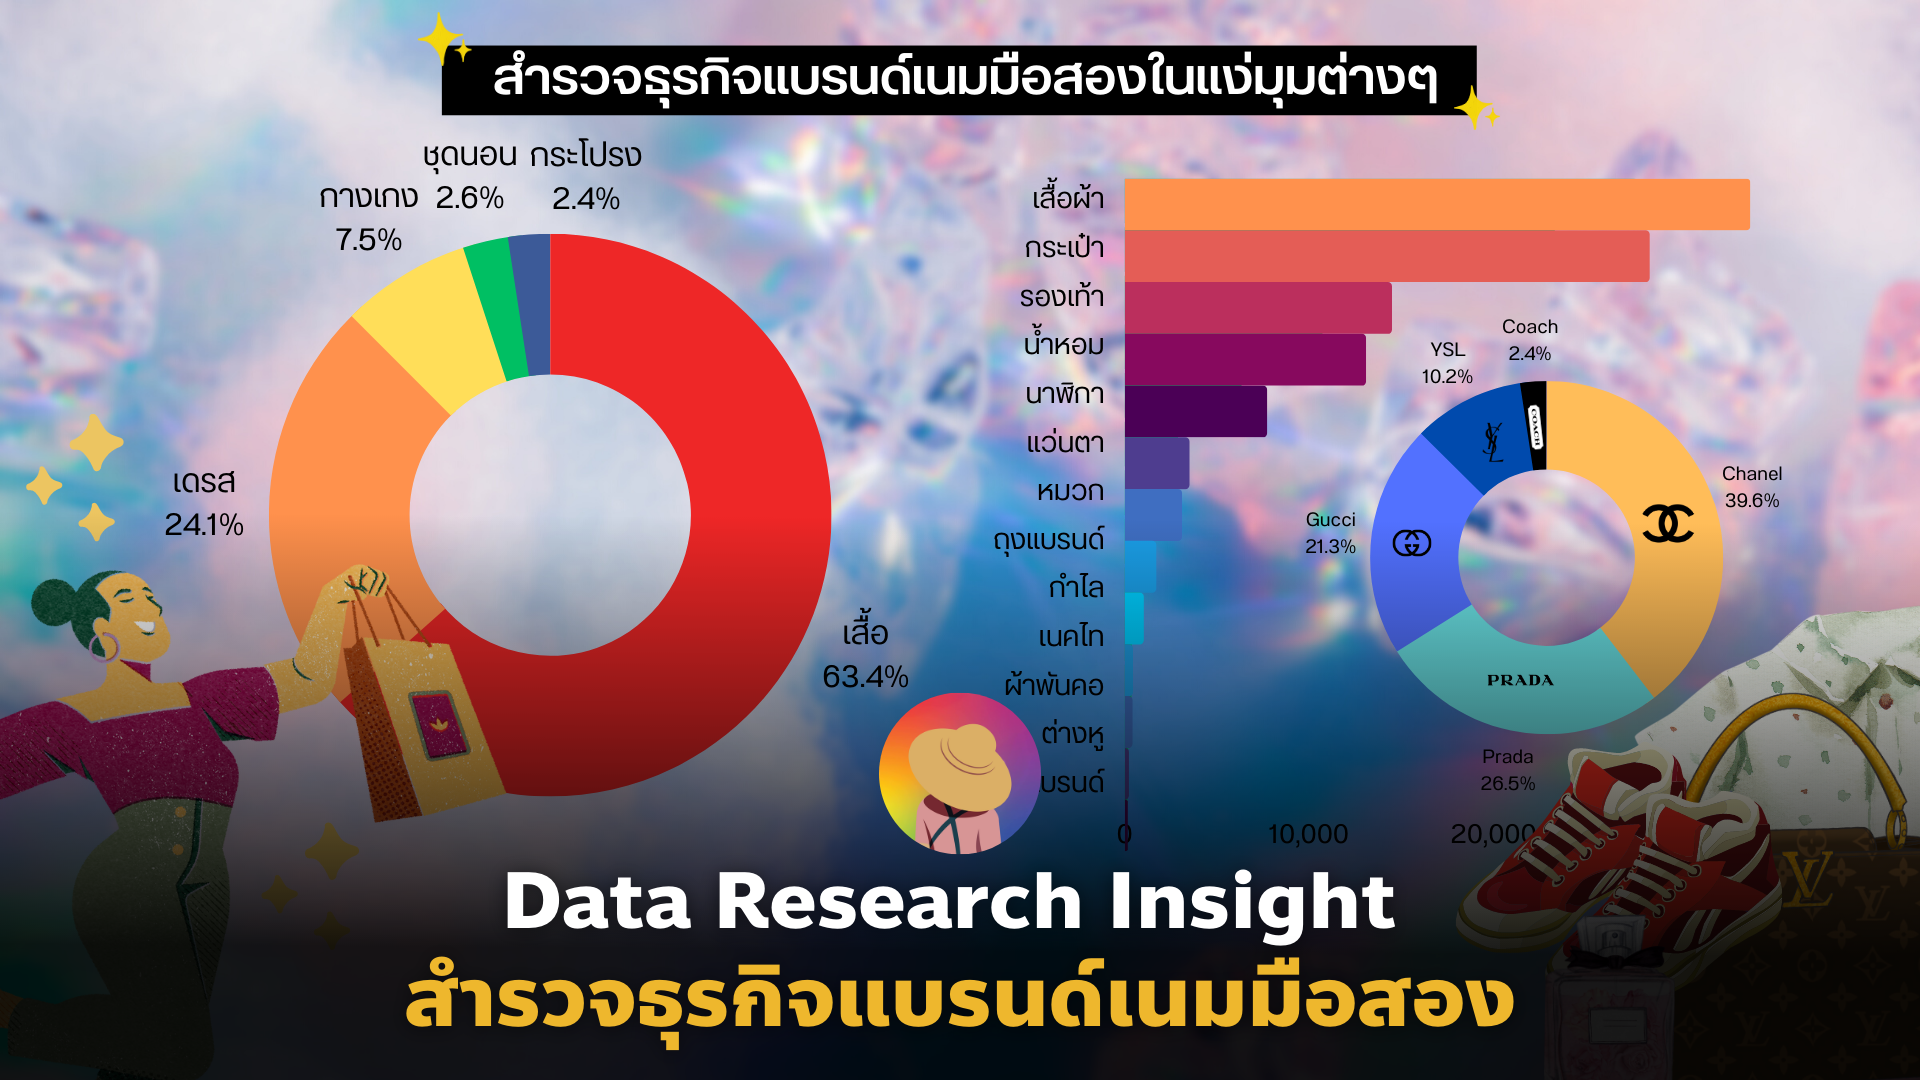 Data Research Insight สำรวจธุรกิจ แบรนด์เนมมือสอง